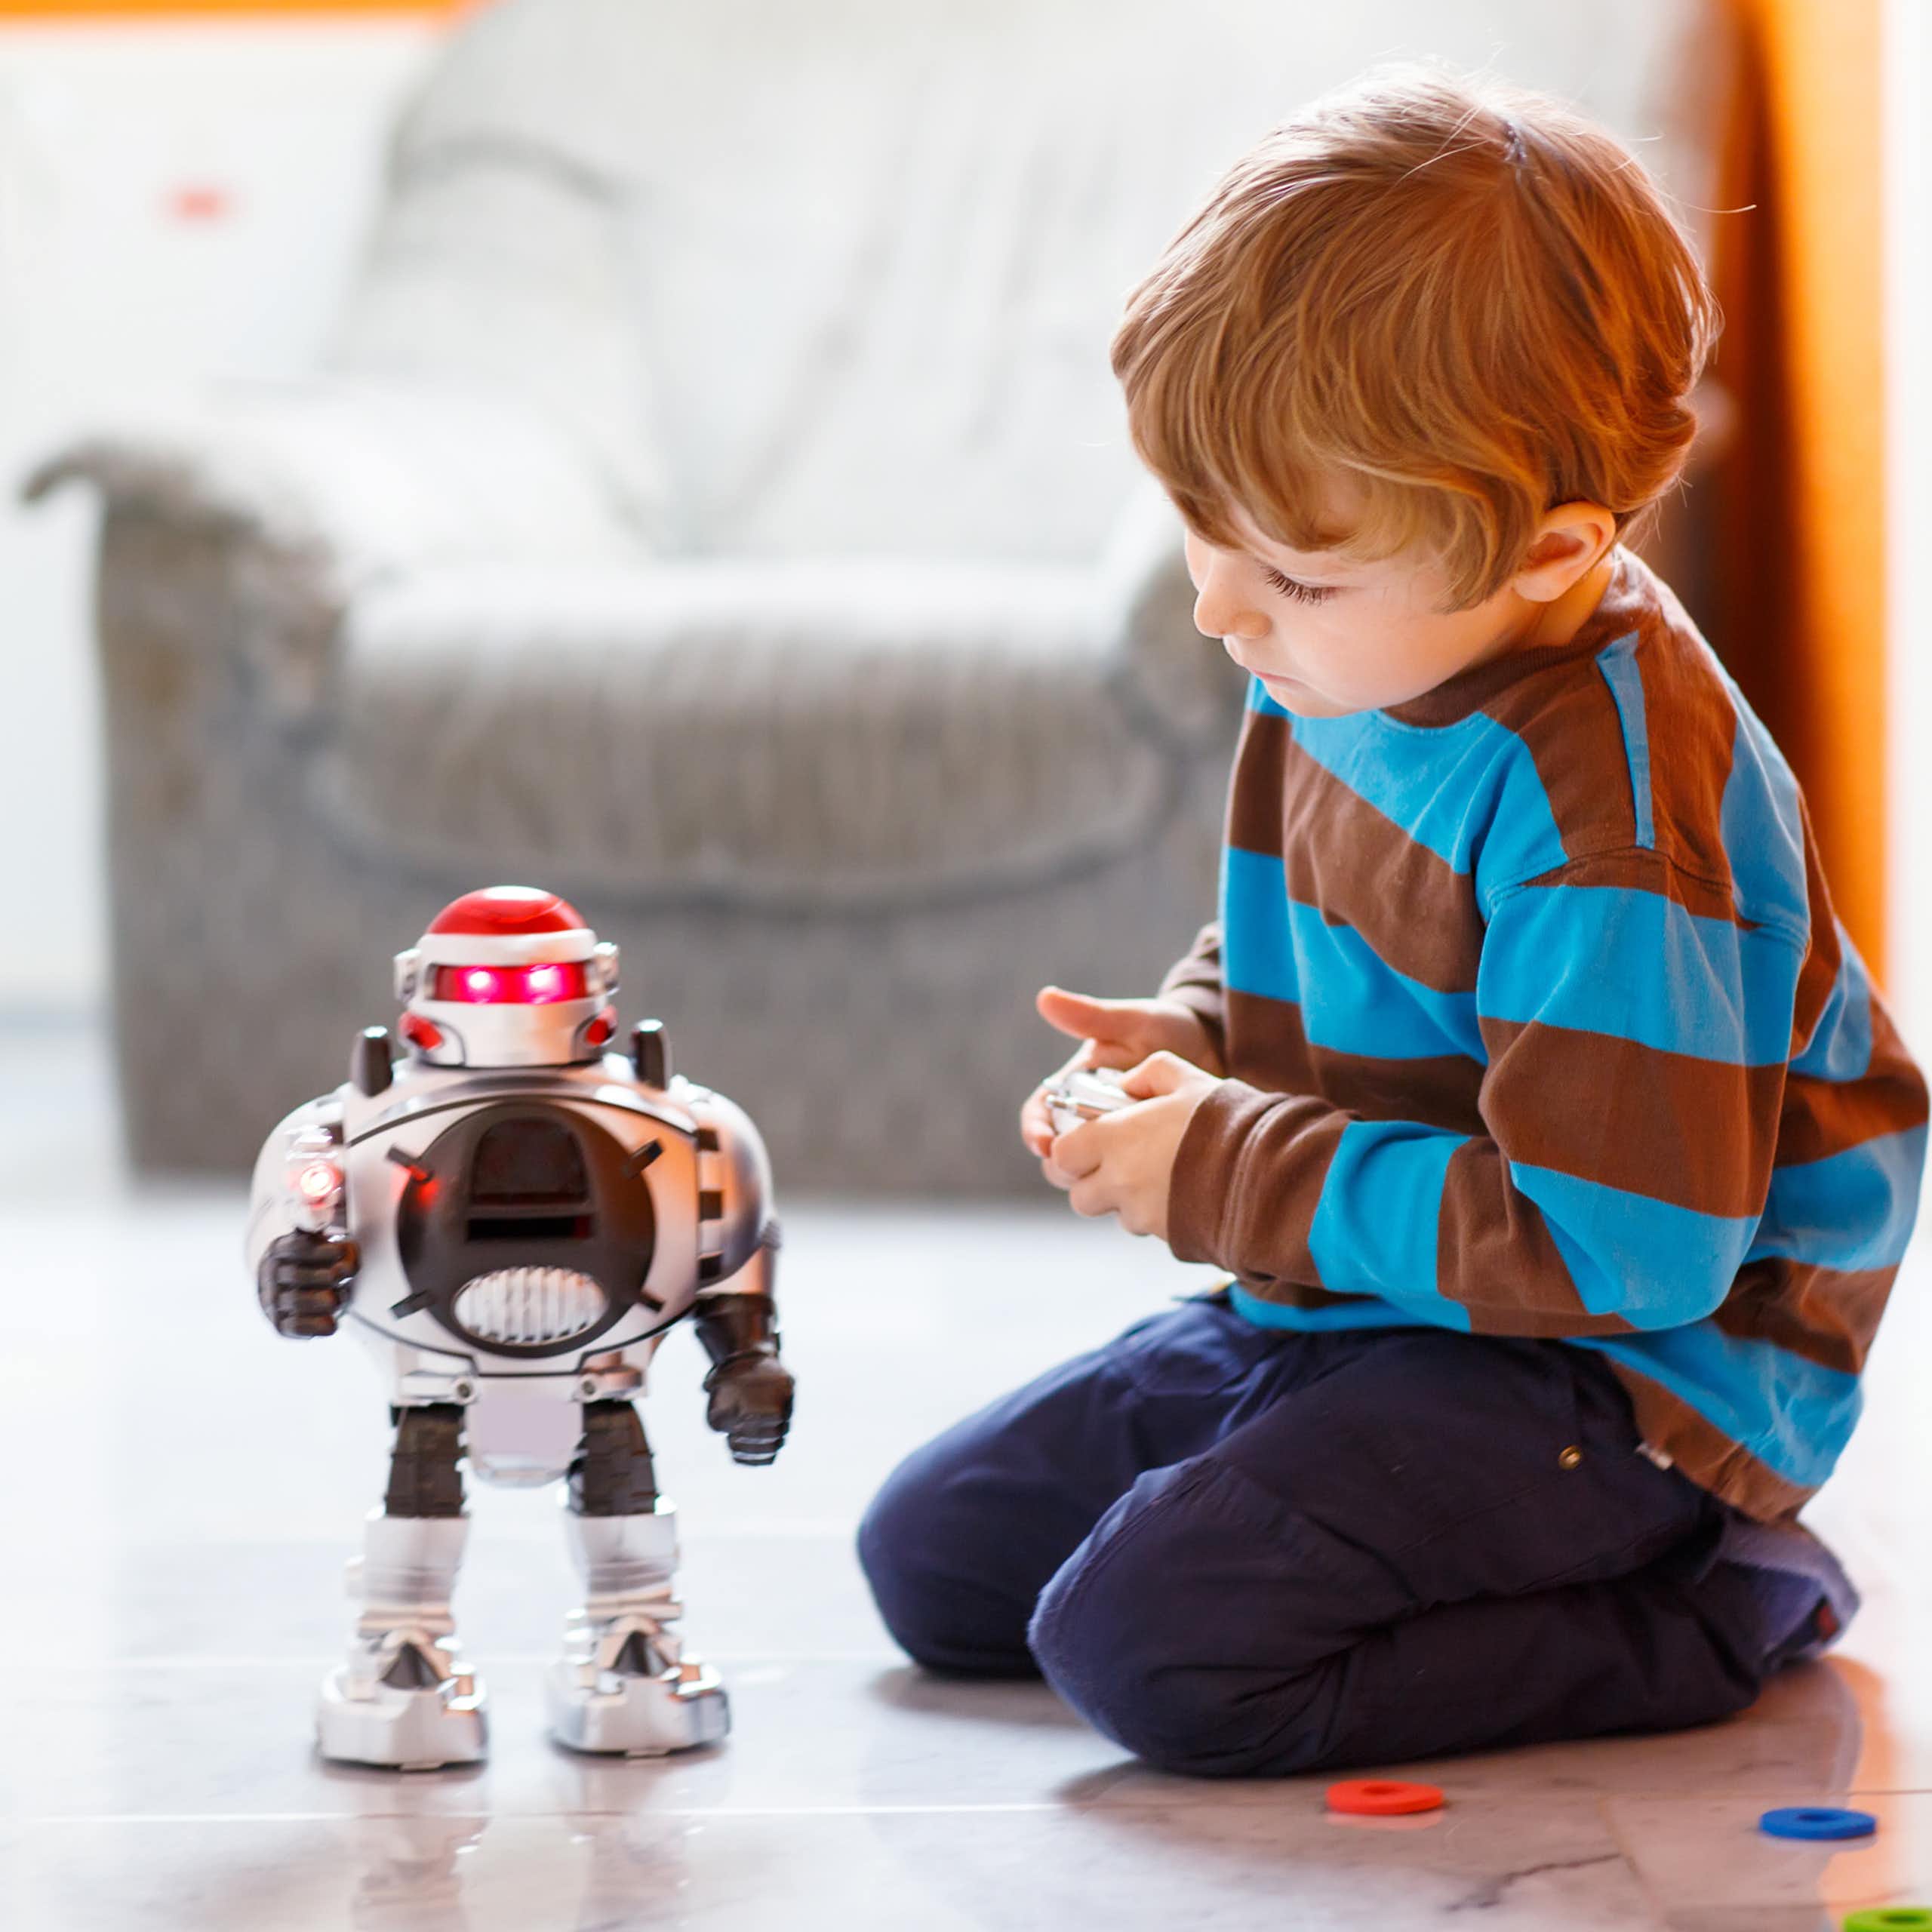 Les produits d’IA pour enfants promettent amitié et apprentissage ? 3 éléments à prendre en compte